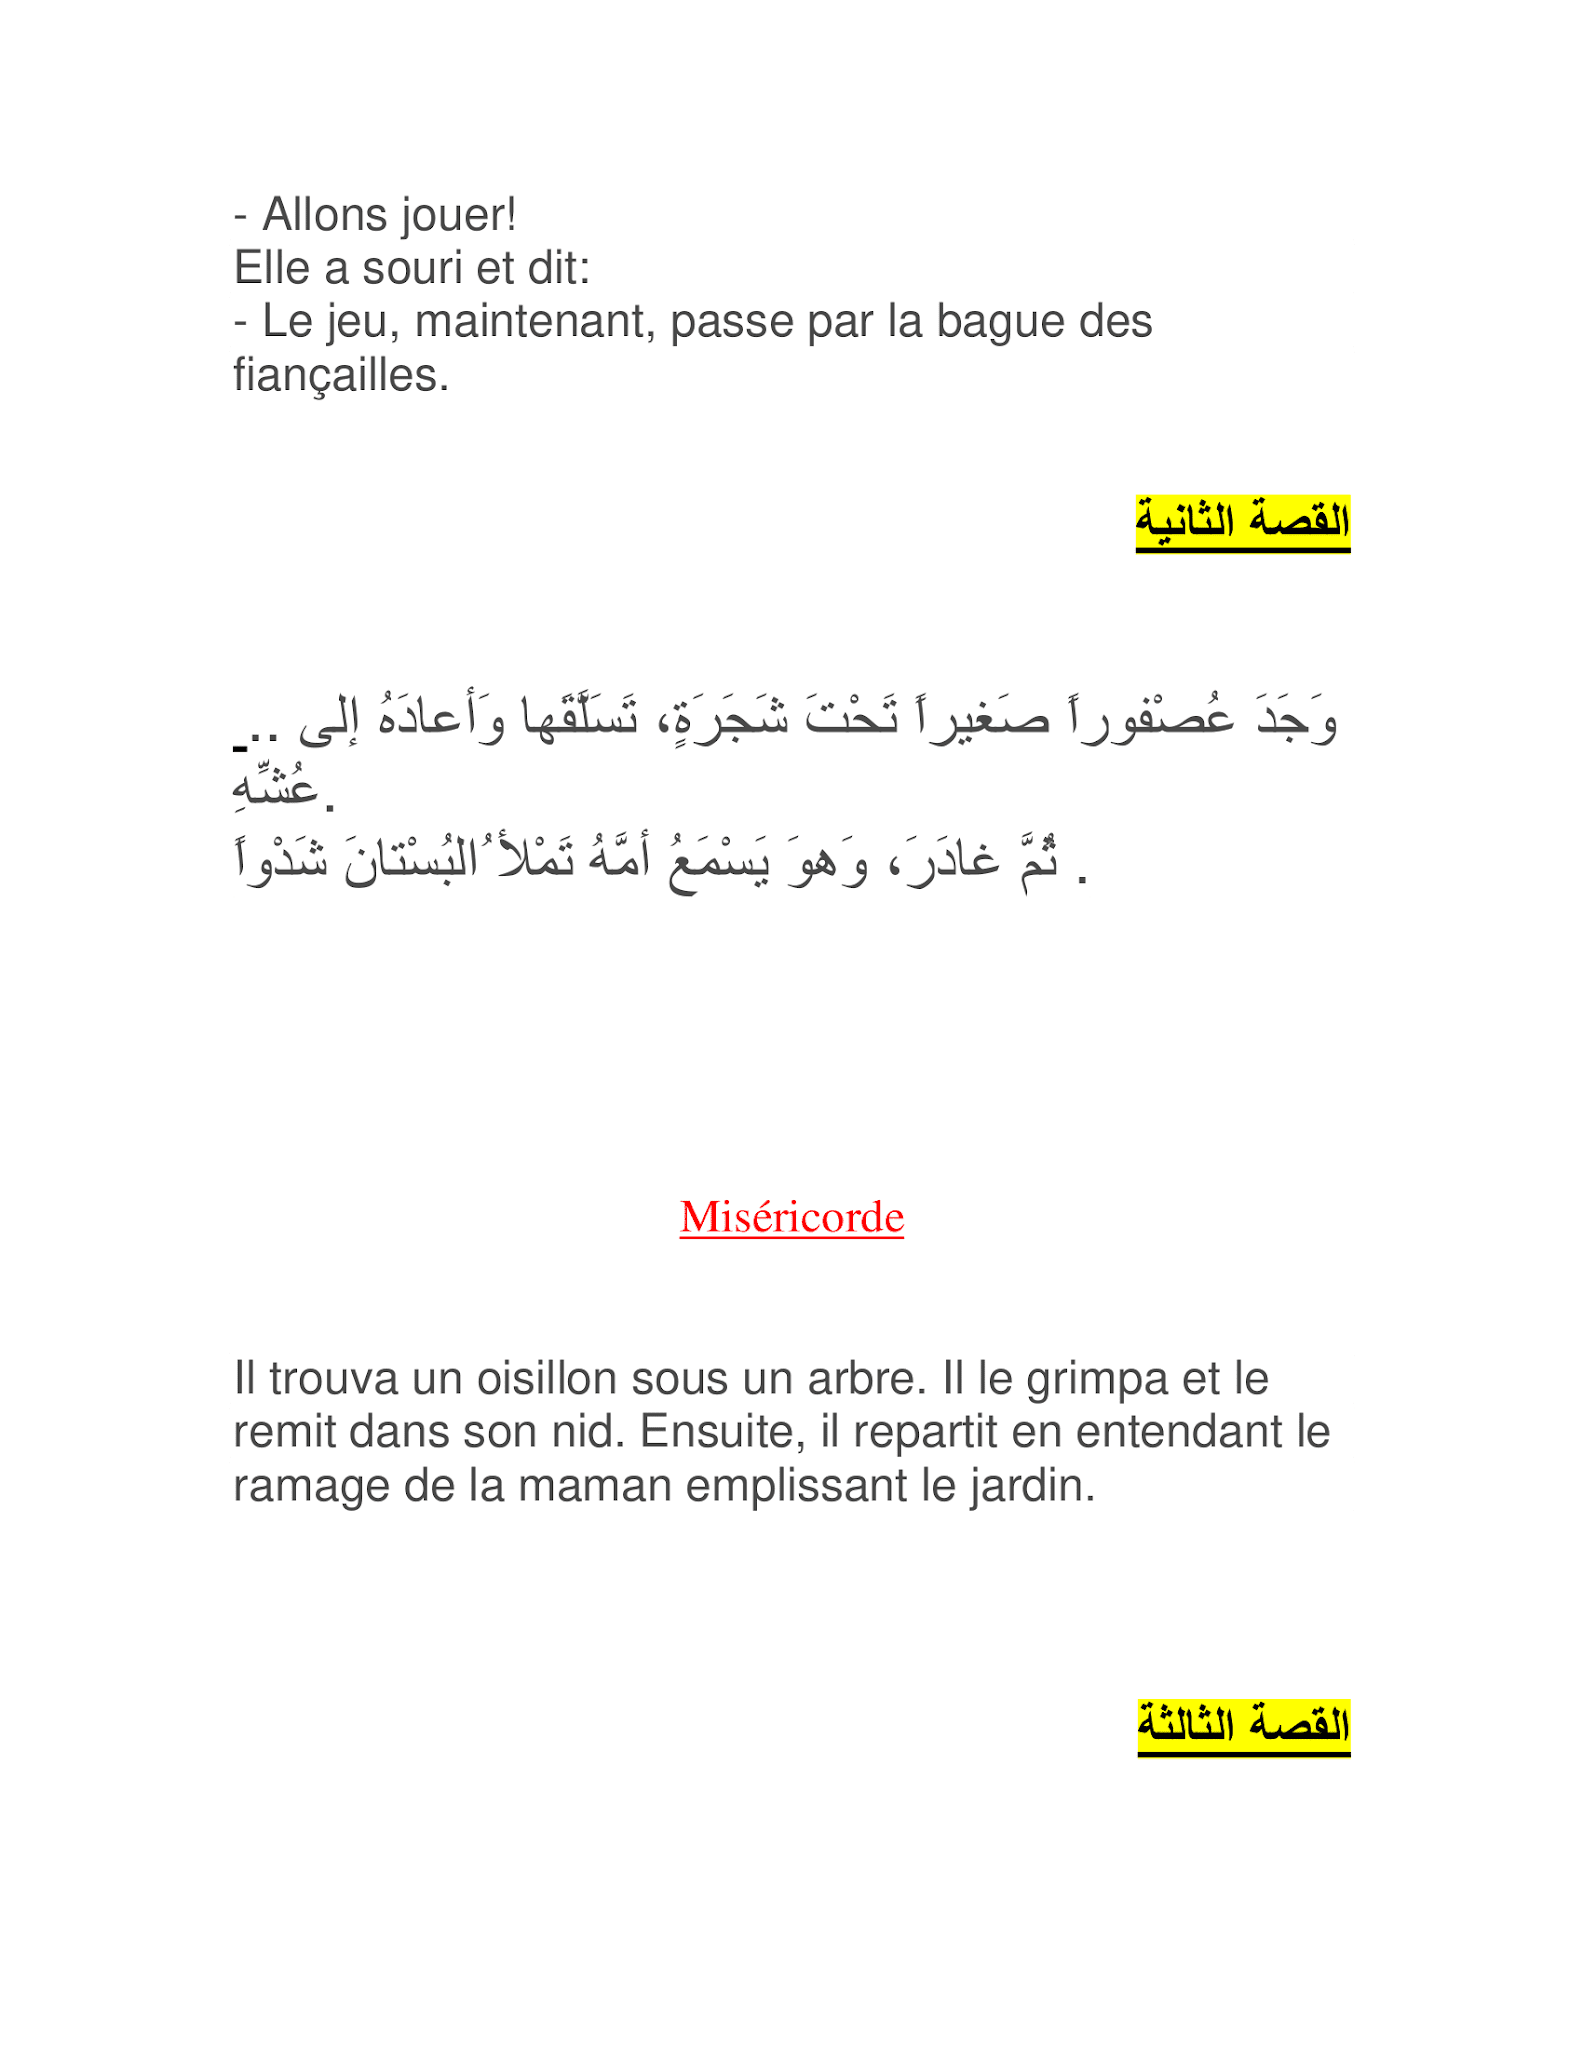 صور بها 8 قصص مترجمة من العربية الى الفرنسية